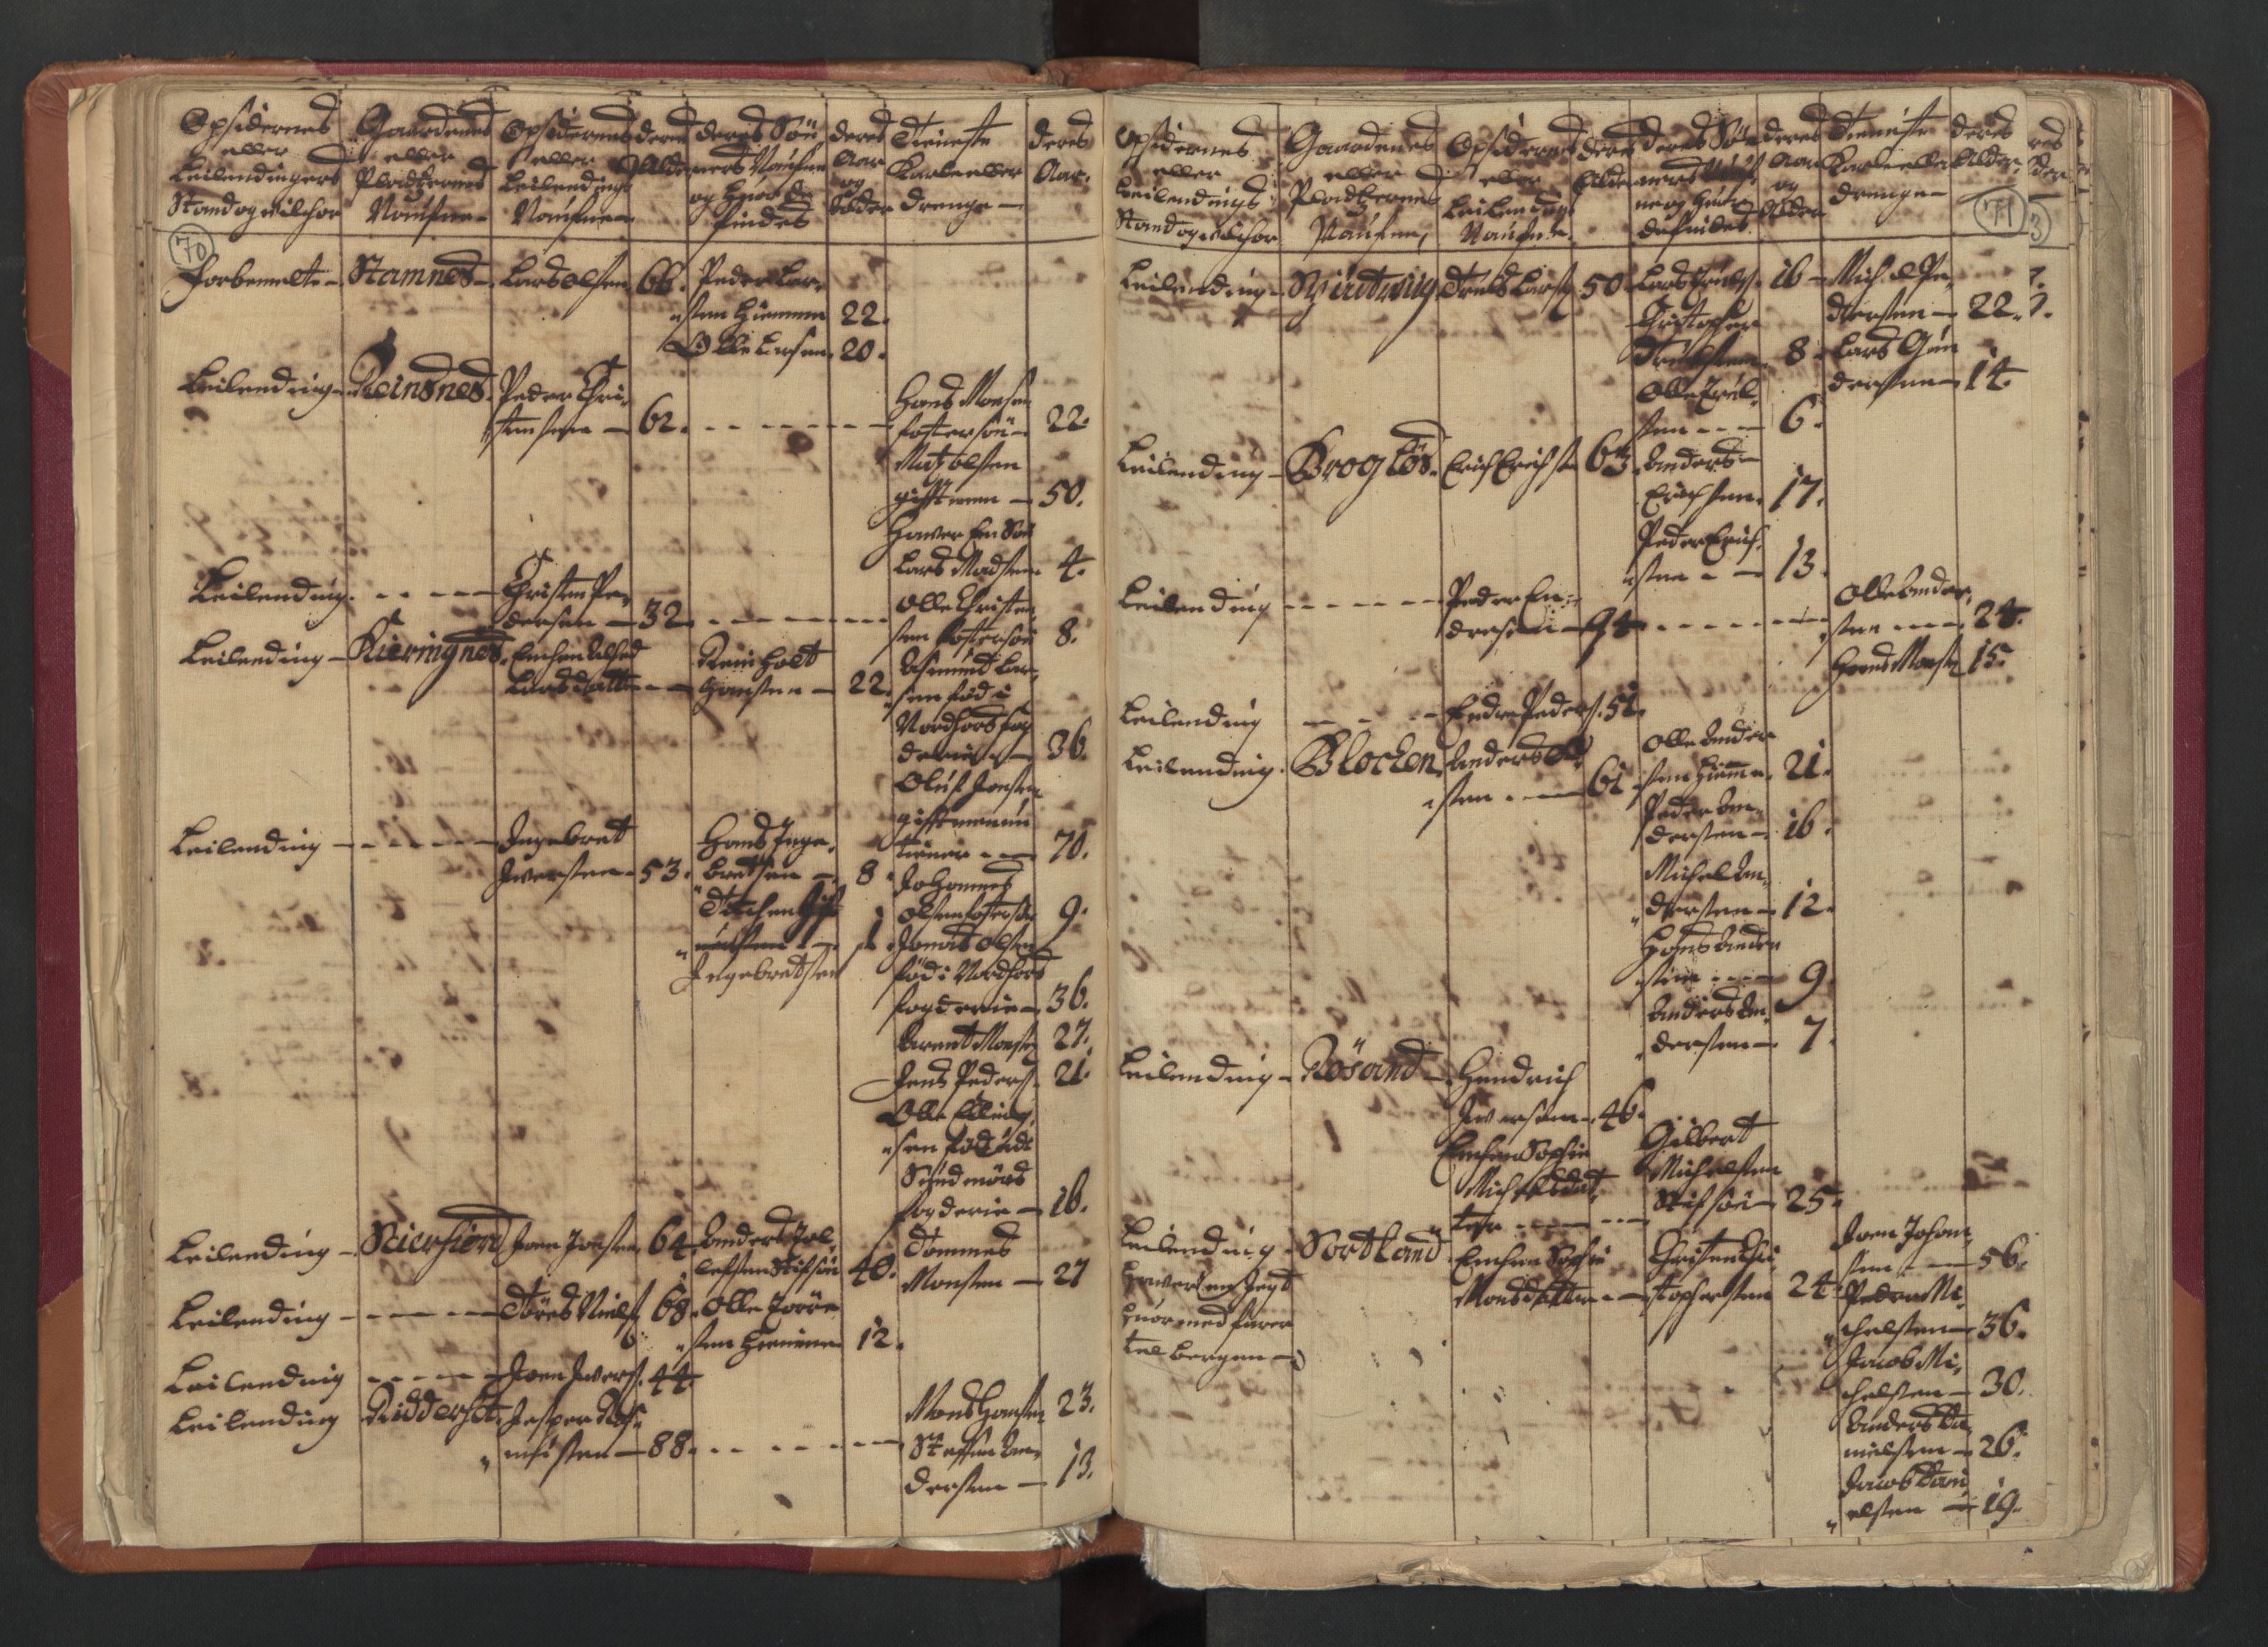 RA, Census (manntall) 1701, no. 18: Vesterålen, Andenes and Lofoten fogderi, 1701, p. 70-71